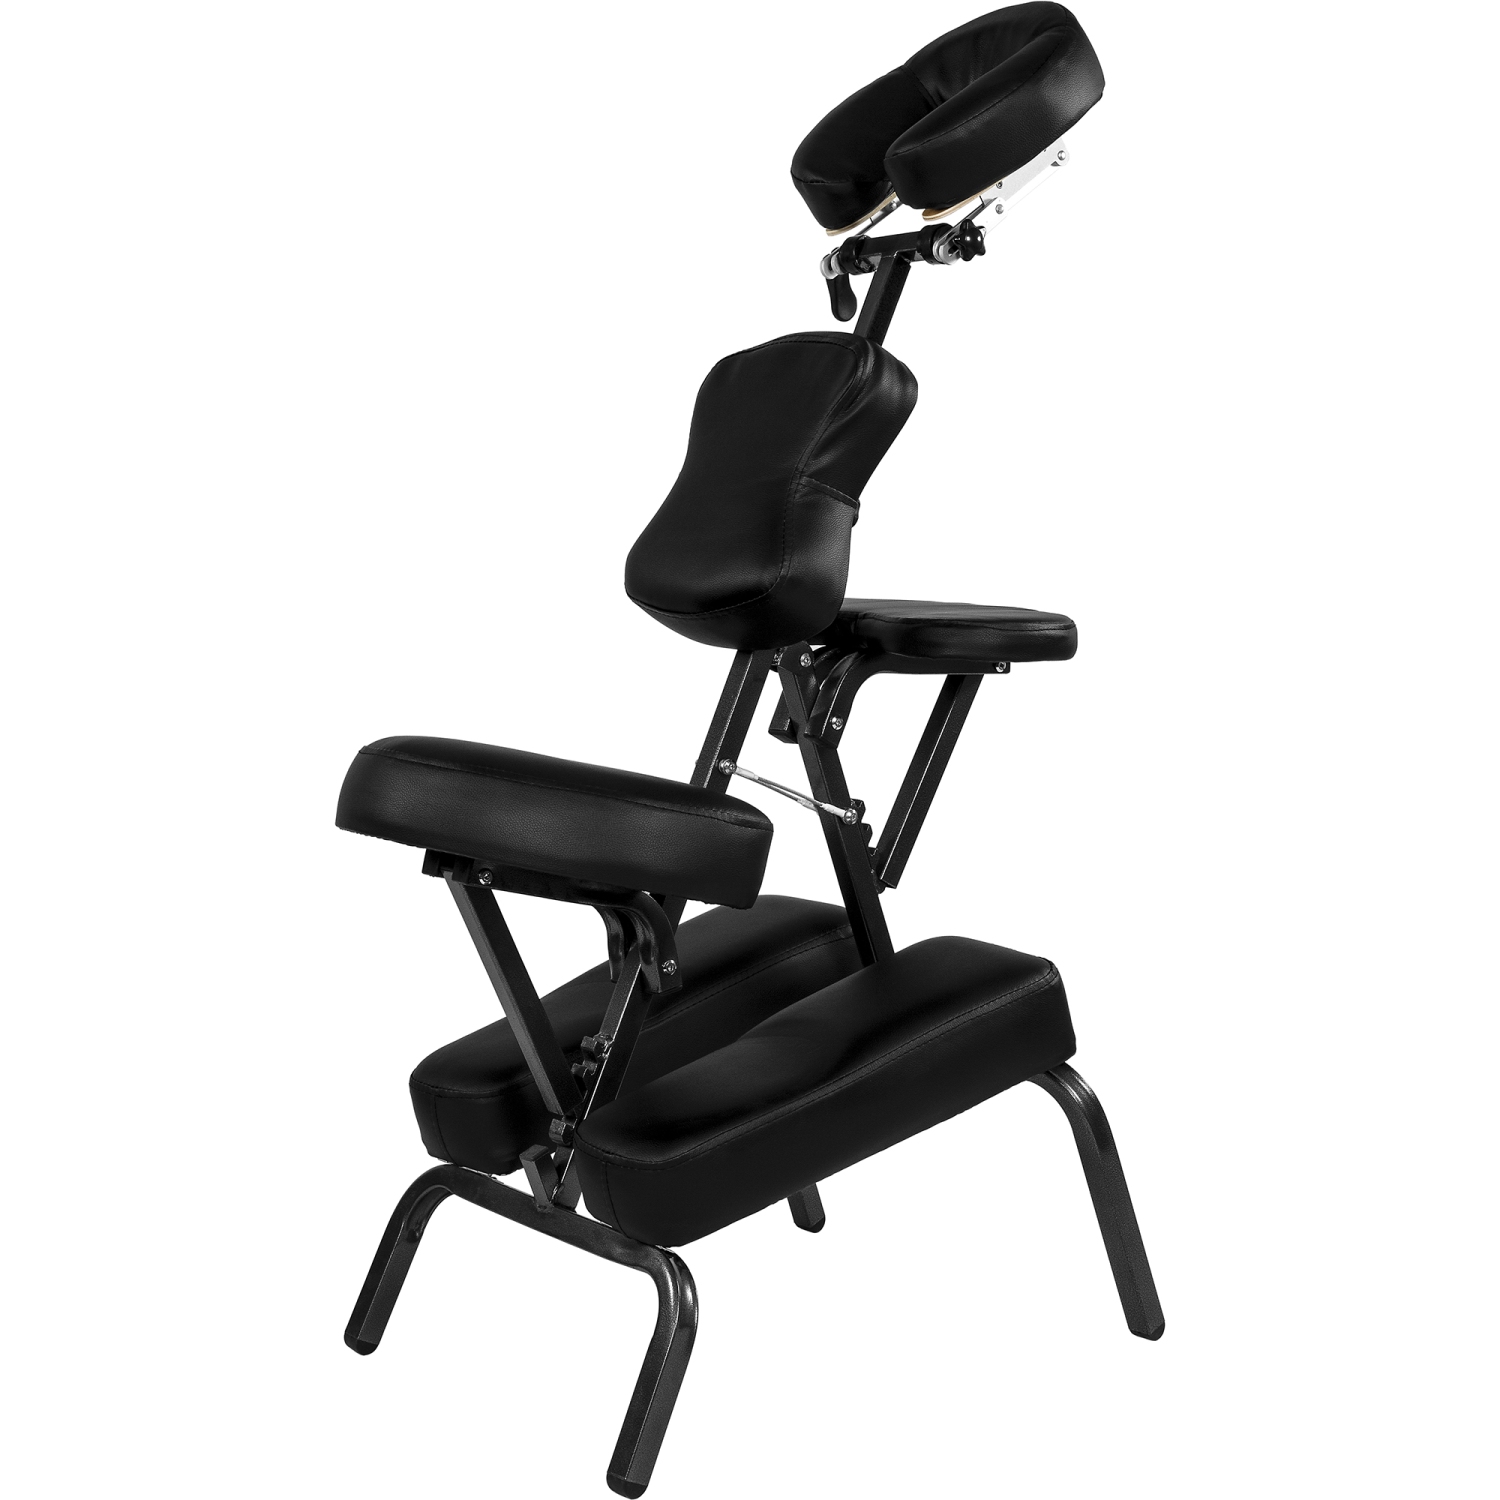 Behandelstoel – Massagestoel – Verstelbaar en opvouwbaar – Inclusief draagtas – 49 x 113 x 70 cm – Zwart